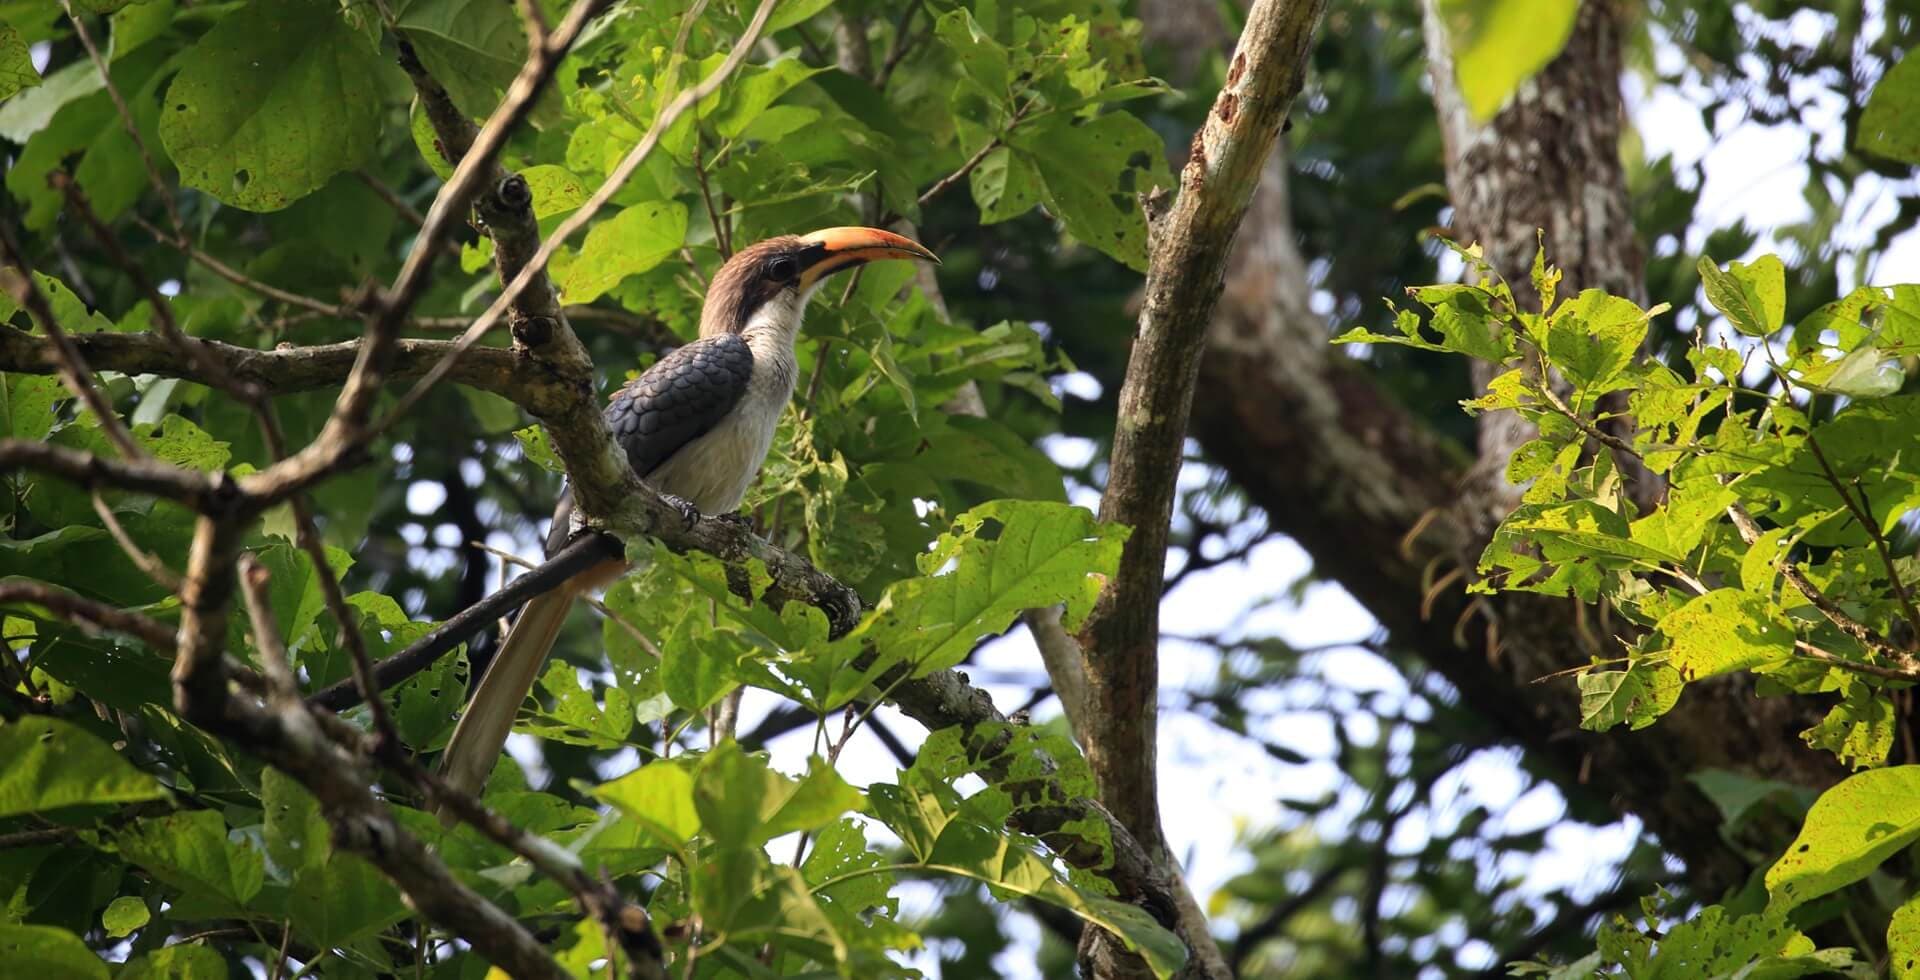 Der srilankische Graue Nashornvogel (Ocyceros gingalensis) ist ein Vogel aus der Familie der Nashornvögel und ein weit verbreiteter und häufiger endemischer Brüter in Sri Lanka